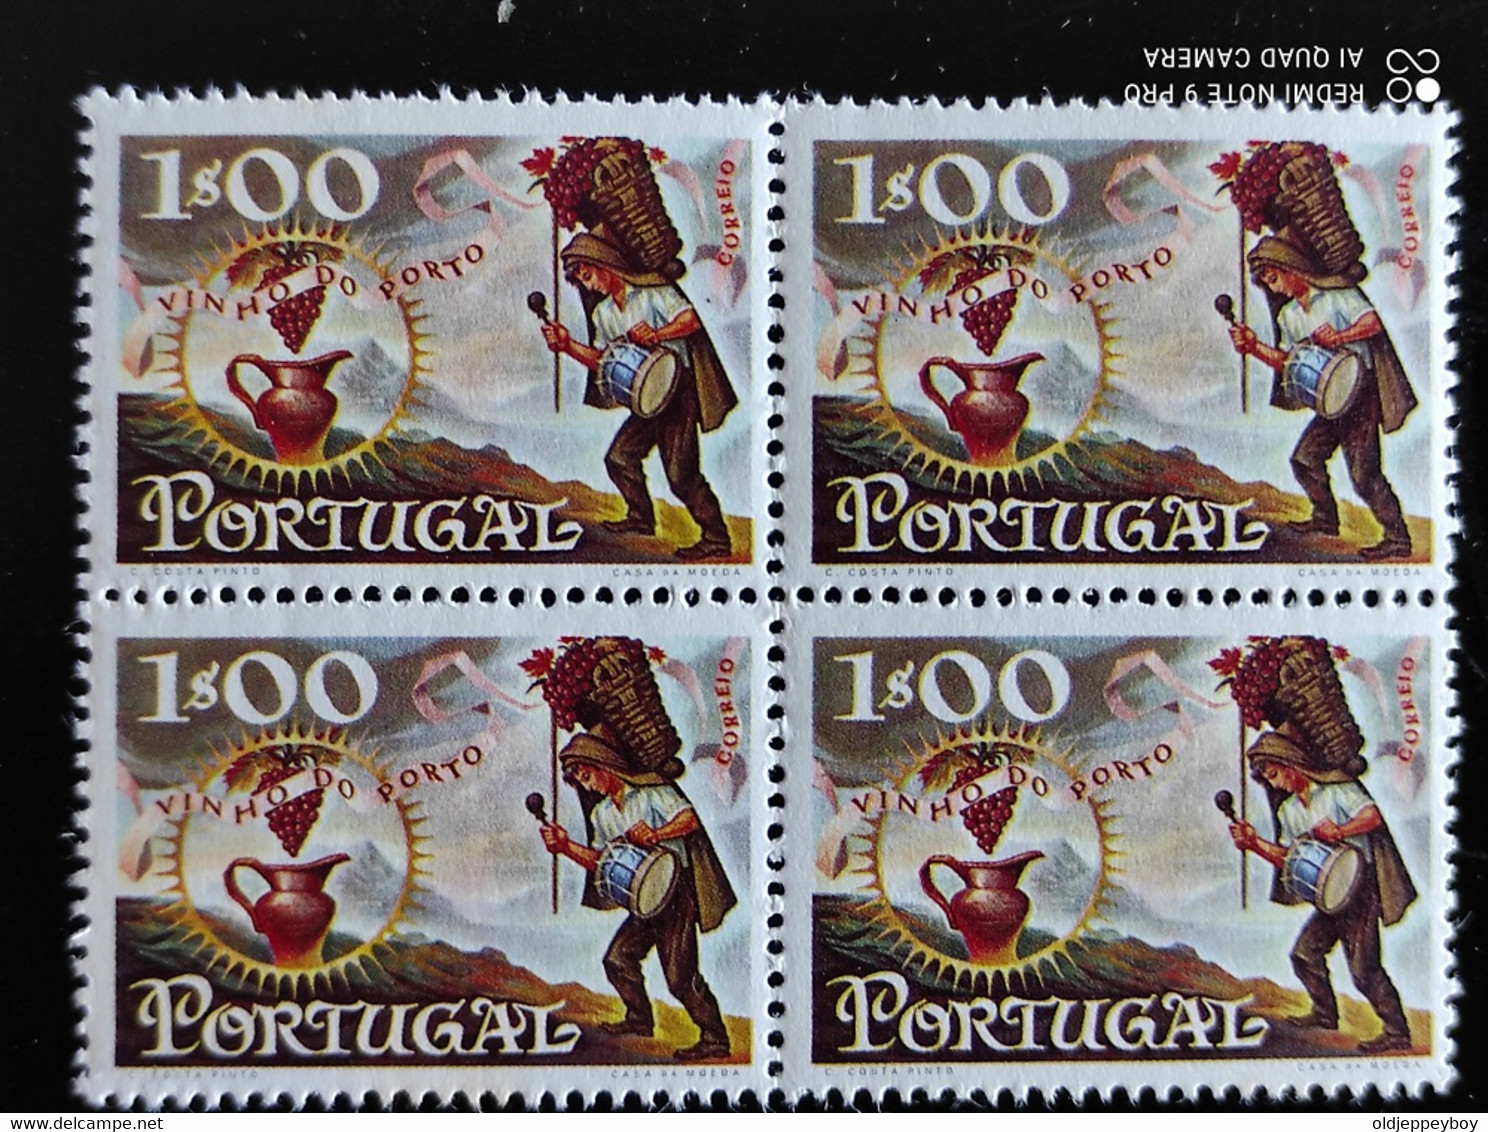 ERRO VARIEDADE  Portugal, 1970 - Vinho Do Porto  Mundifil 1088 2 Blocks Of 4 Colour Variation Error Cor Errada MNH Rare - Neufs